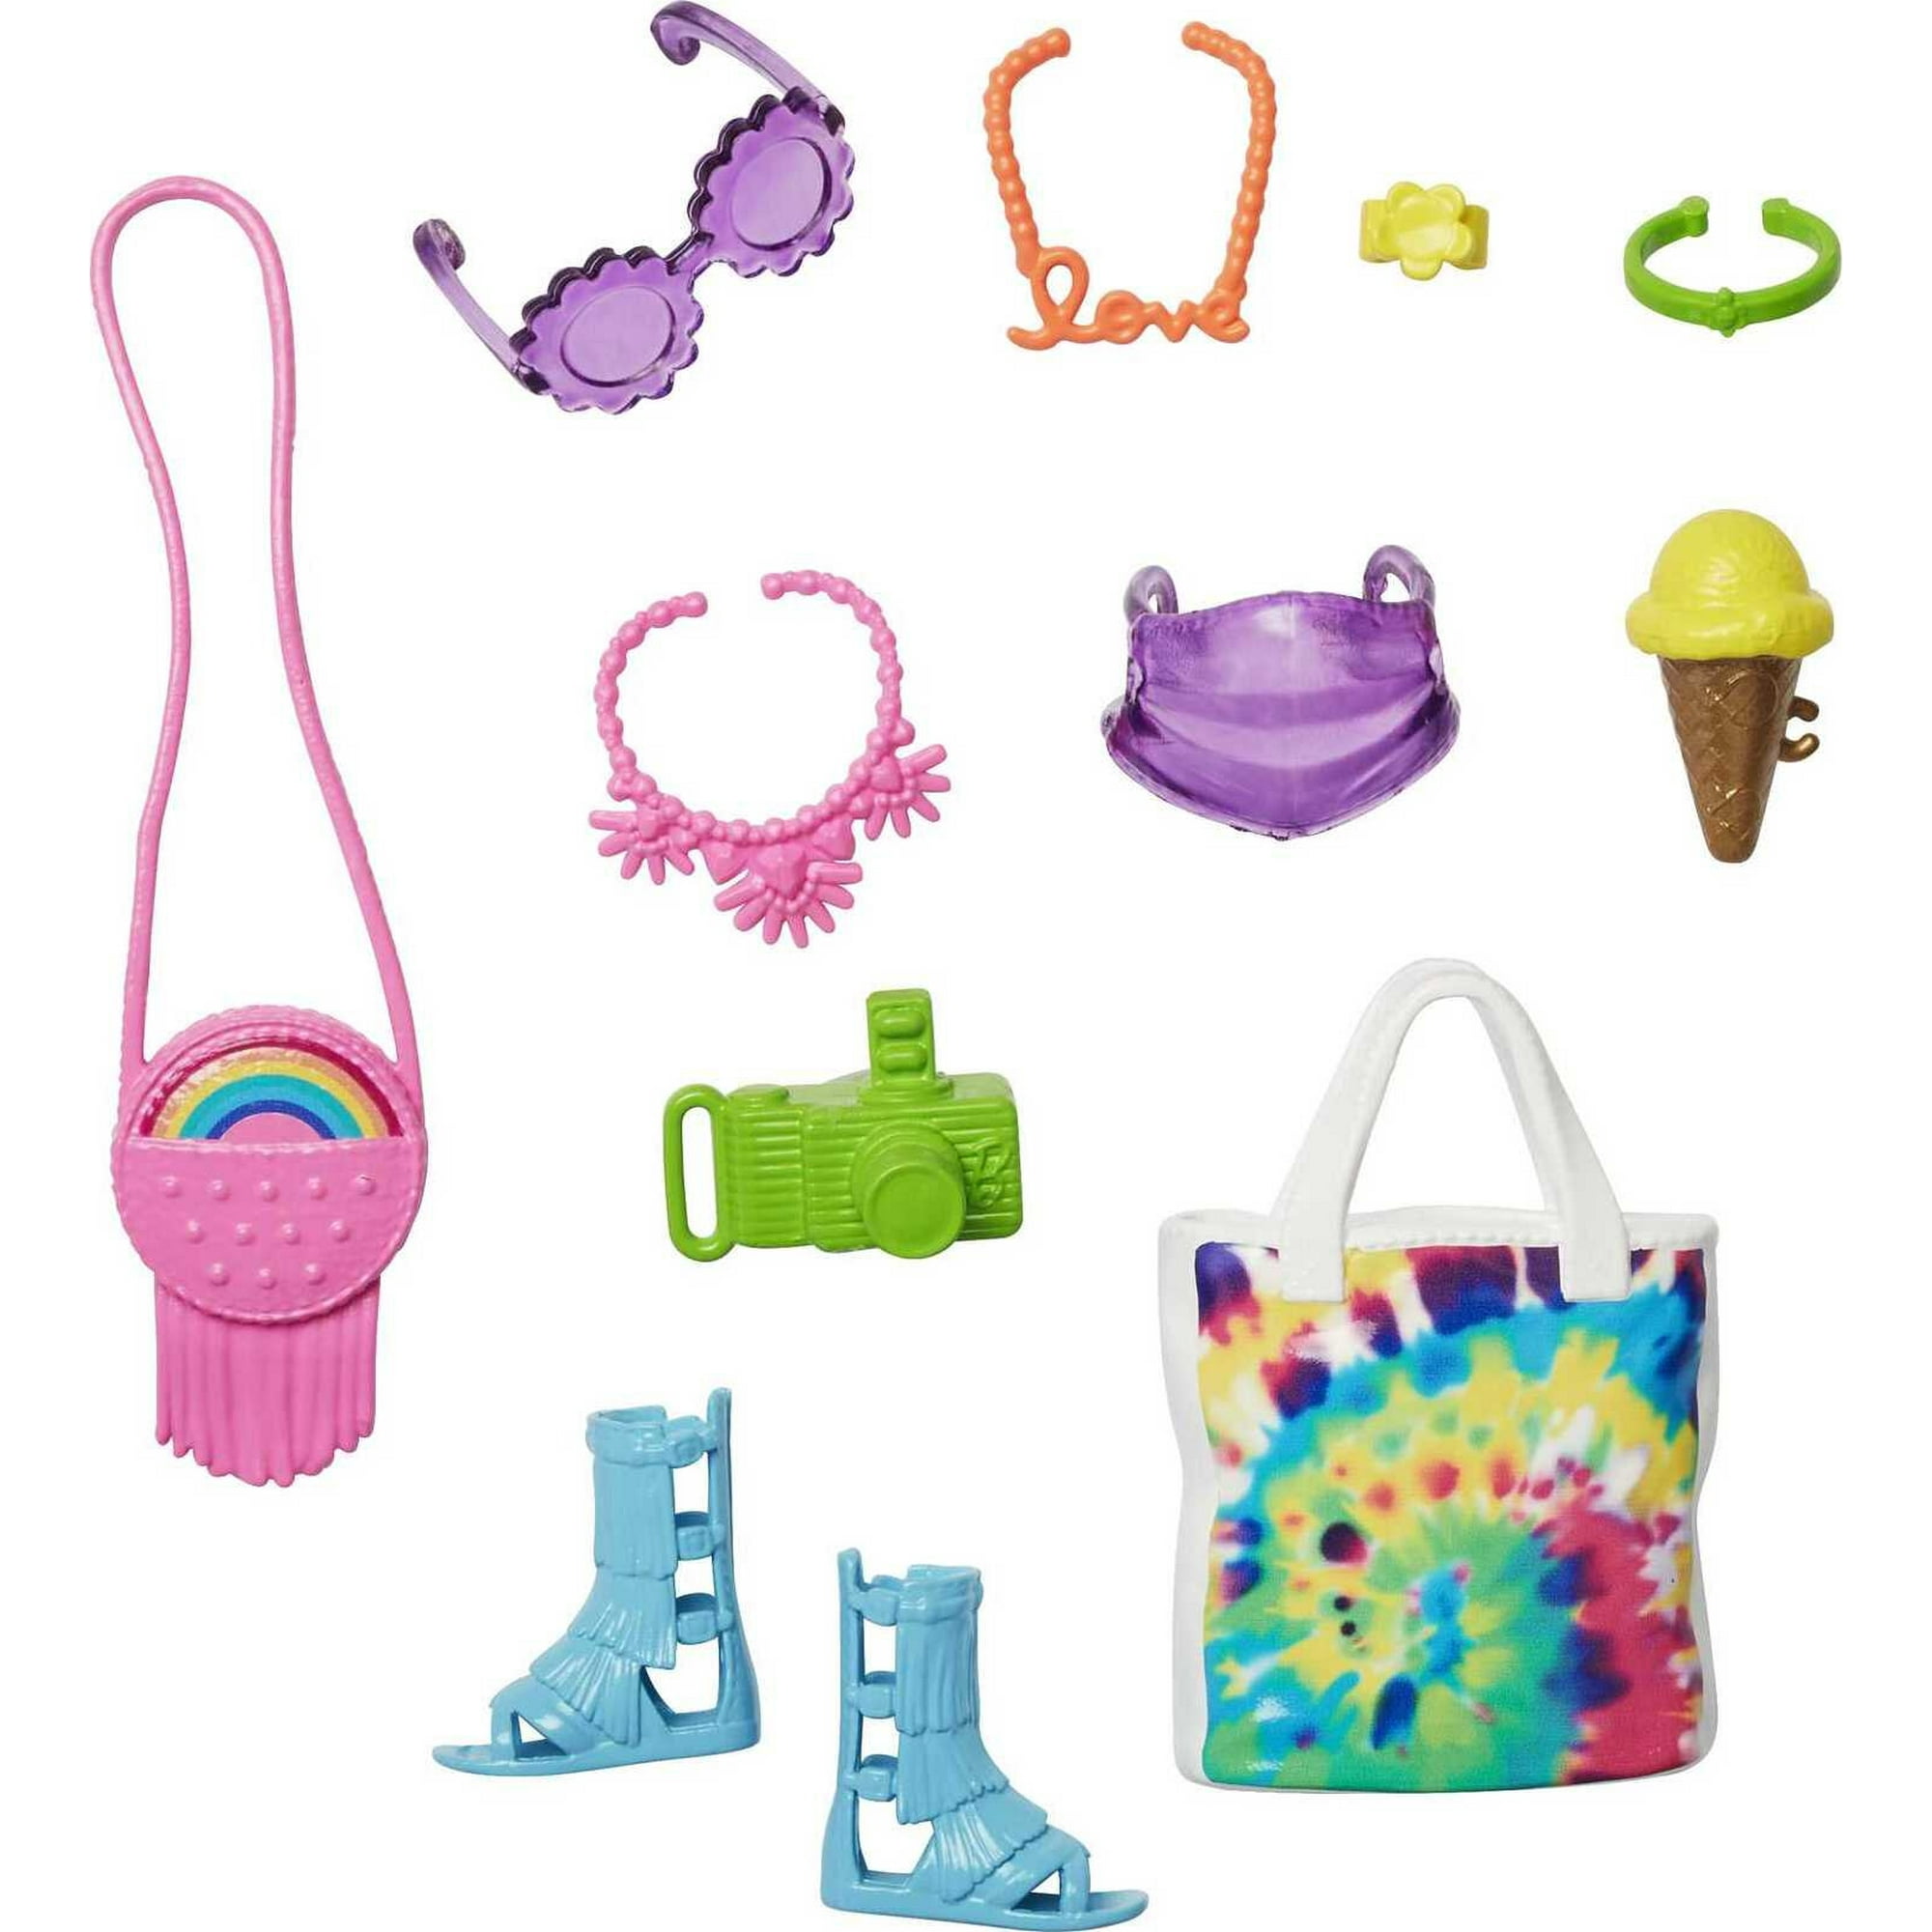 Barbie Fashion Pack, Accessories for Dolls Including Bag, Sunglasses & Camera - Walmart.com